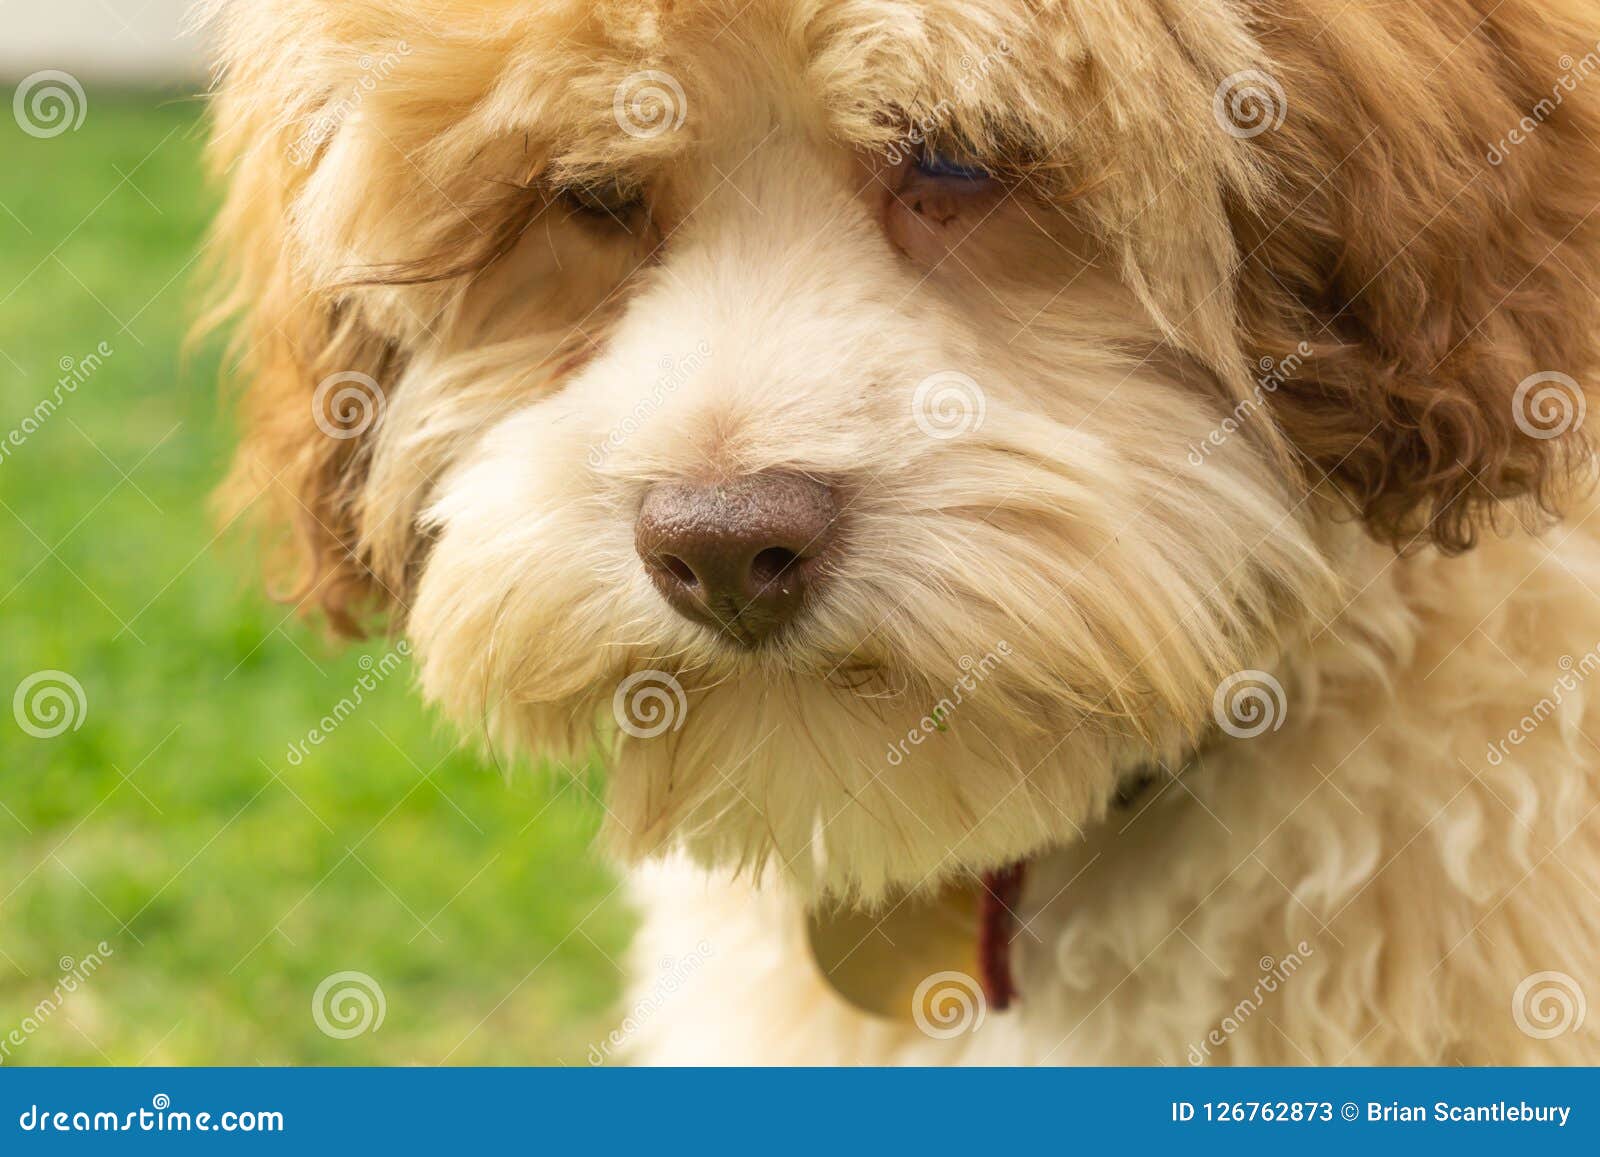 lowchen puppy portrait